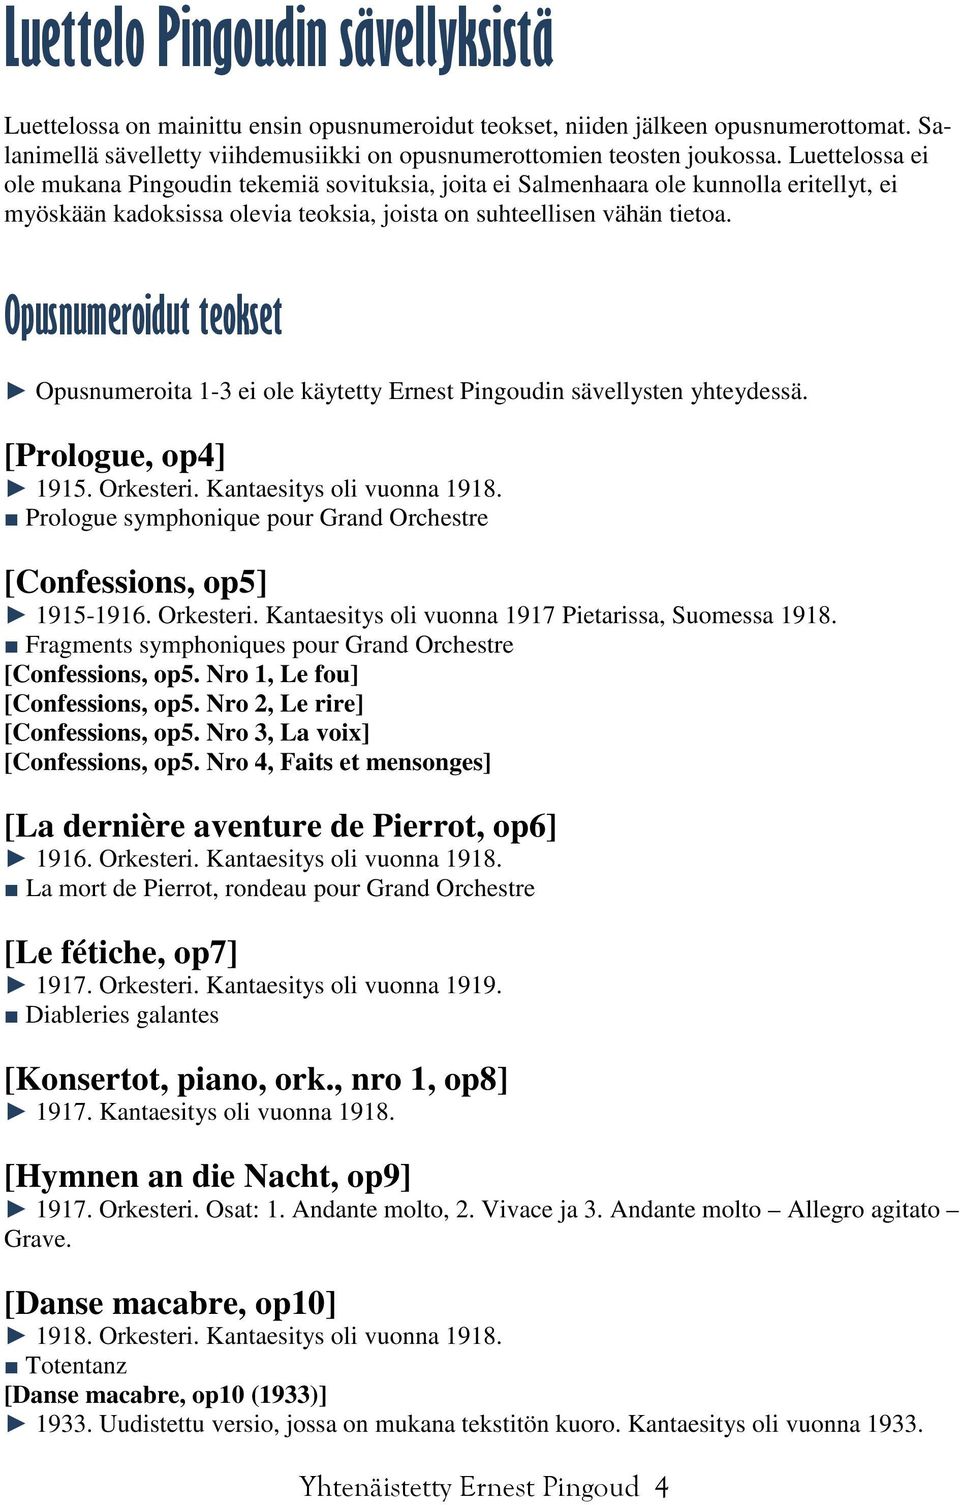 Opusnumeroidut teokset Opusnumeroita 1-3 ei ole käytetty Ernest Pingoudin sävellysten yhteydessä. [Prologue, op4] 1915. Orkesteri. Kantaesitys oli vuonna 1918.